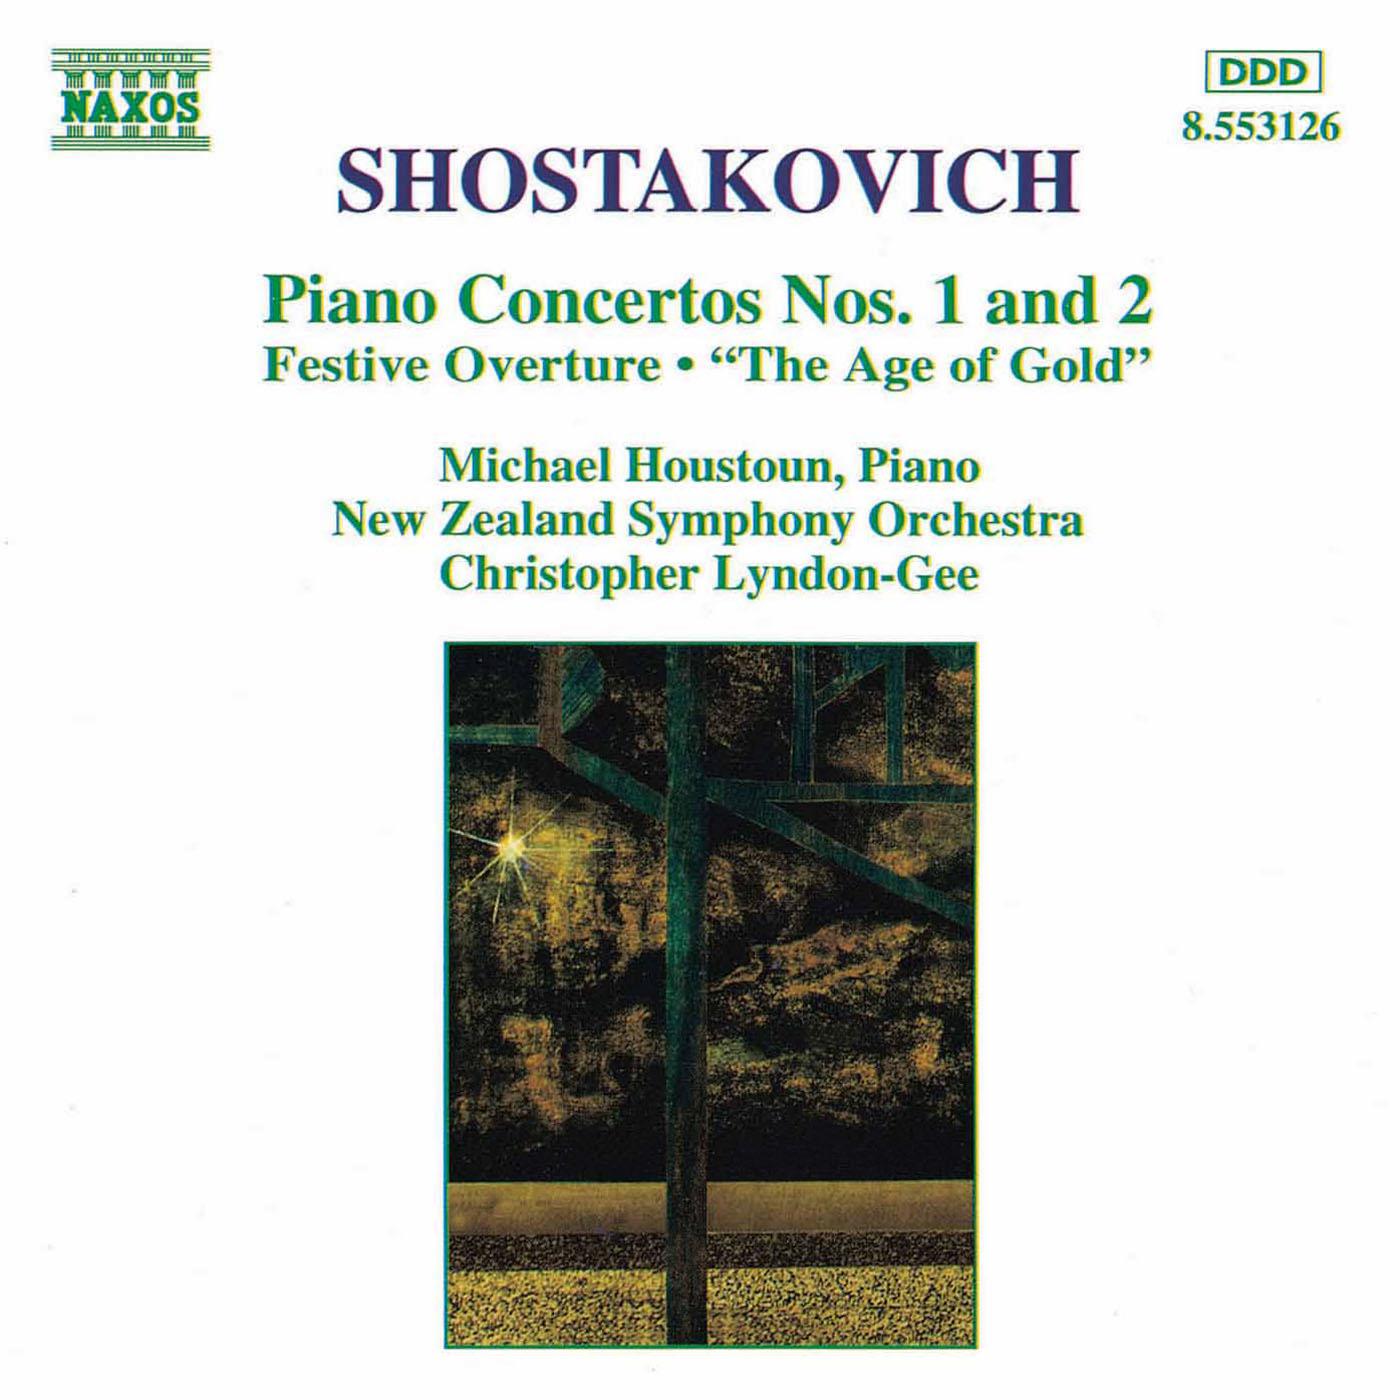 SHOSTAKOVICH: Piano Concertos Nos. 1 and 2